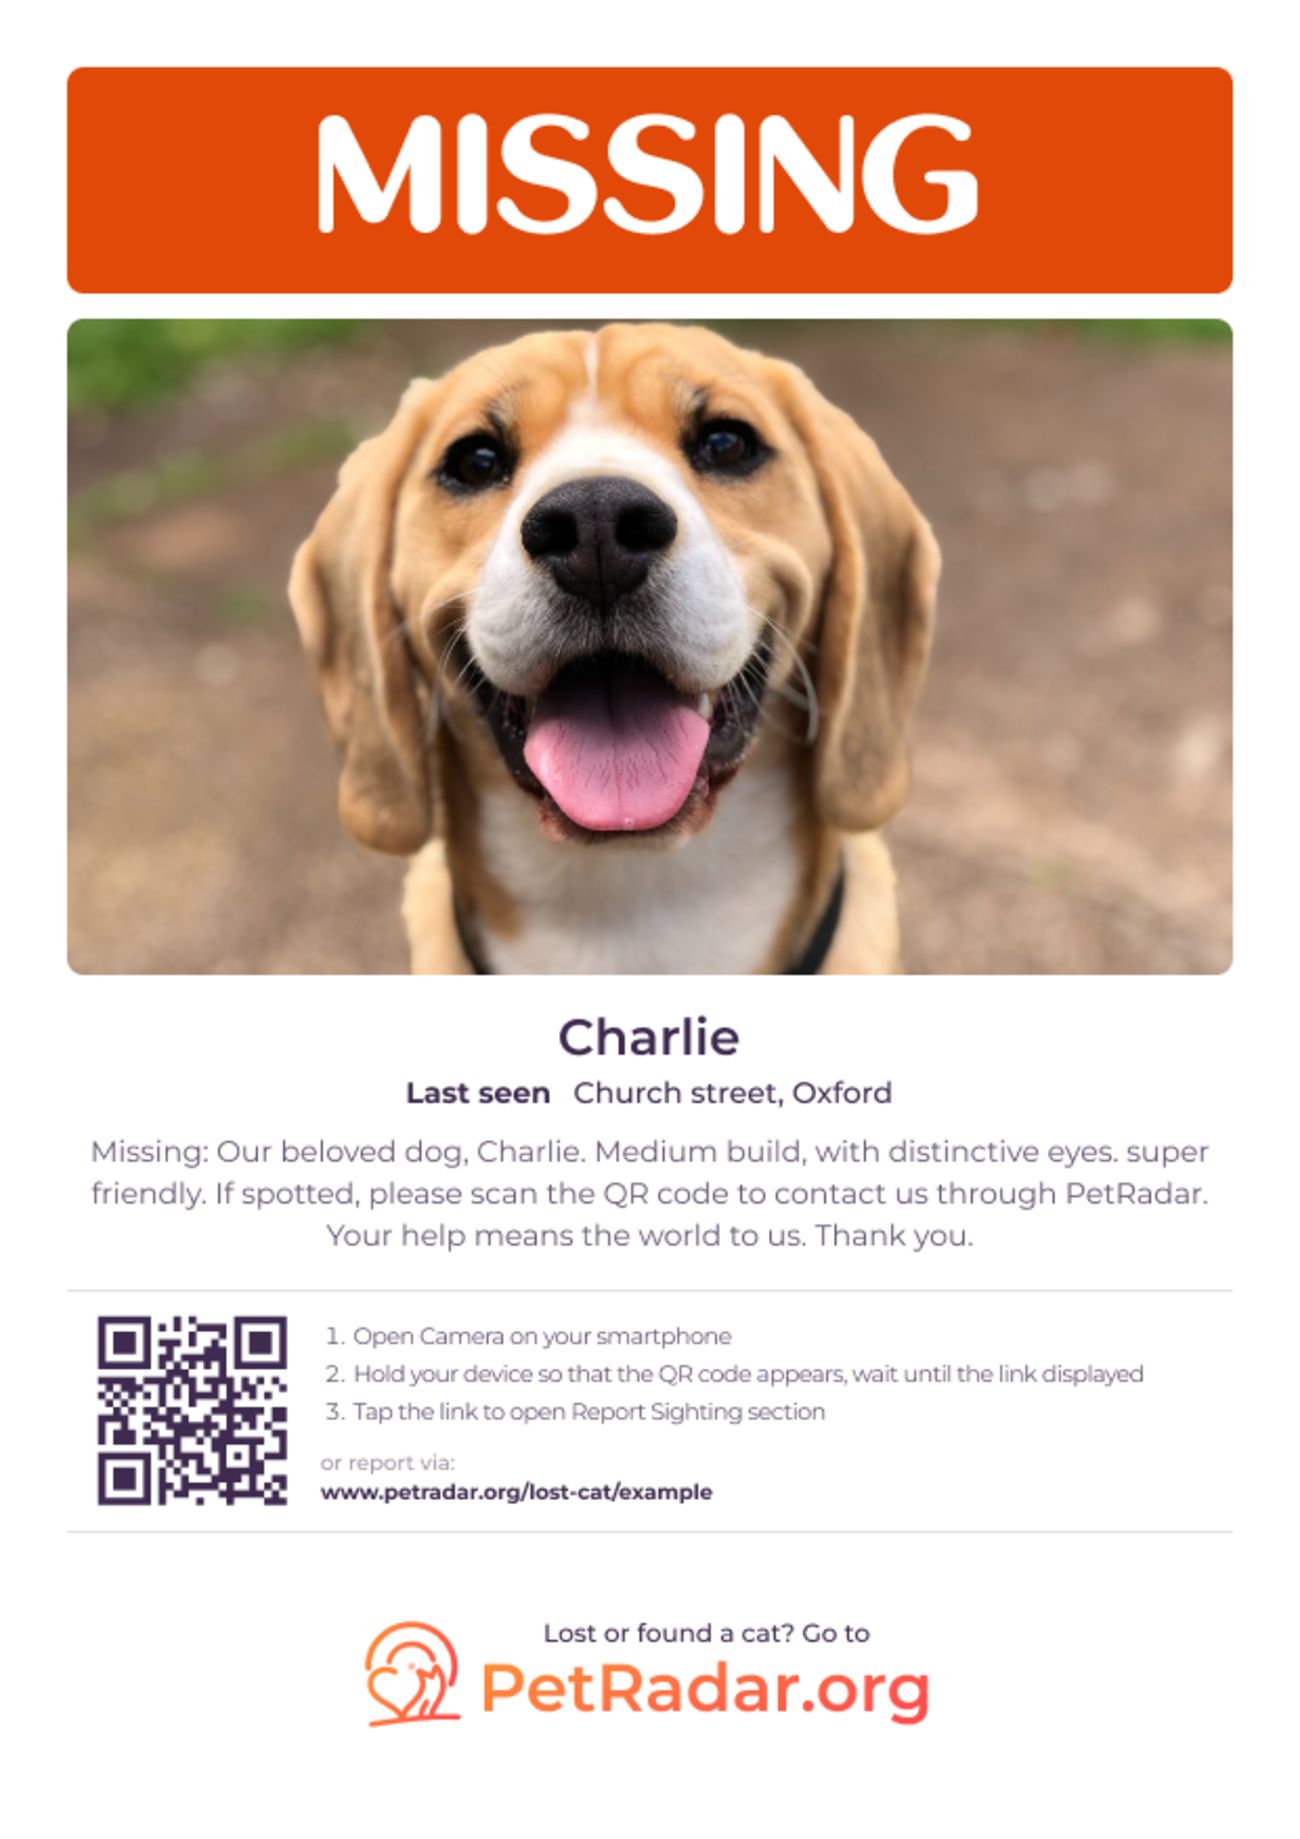 Póster gratis descargable e imprimible de PetRadar para perros perdidos